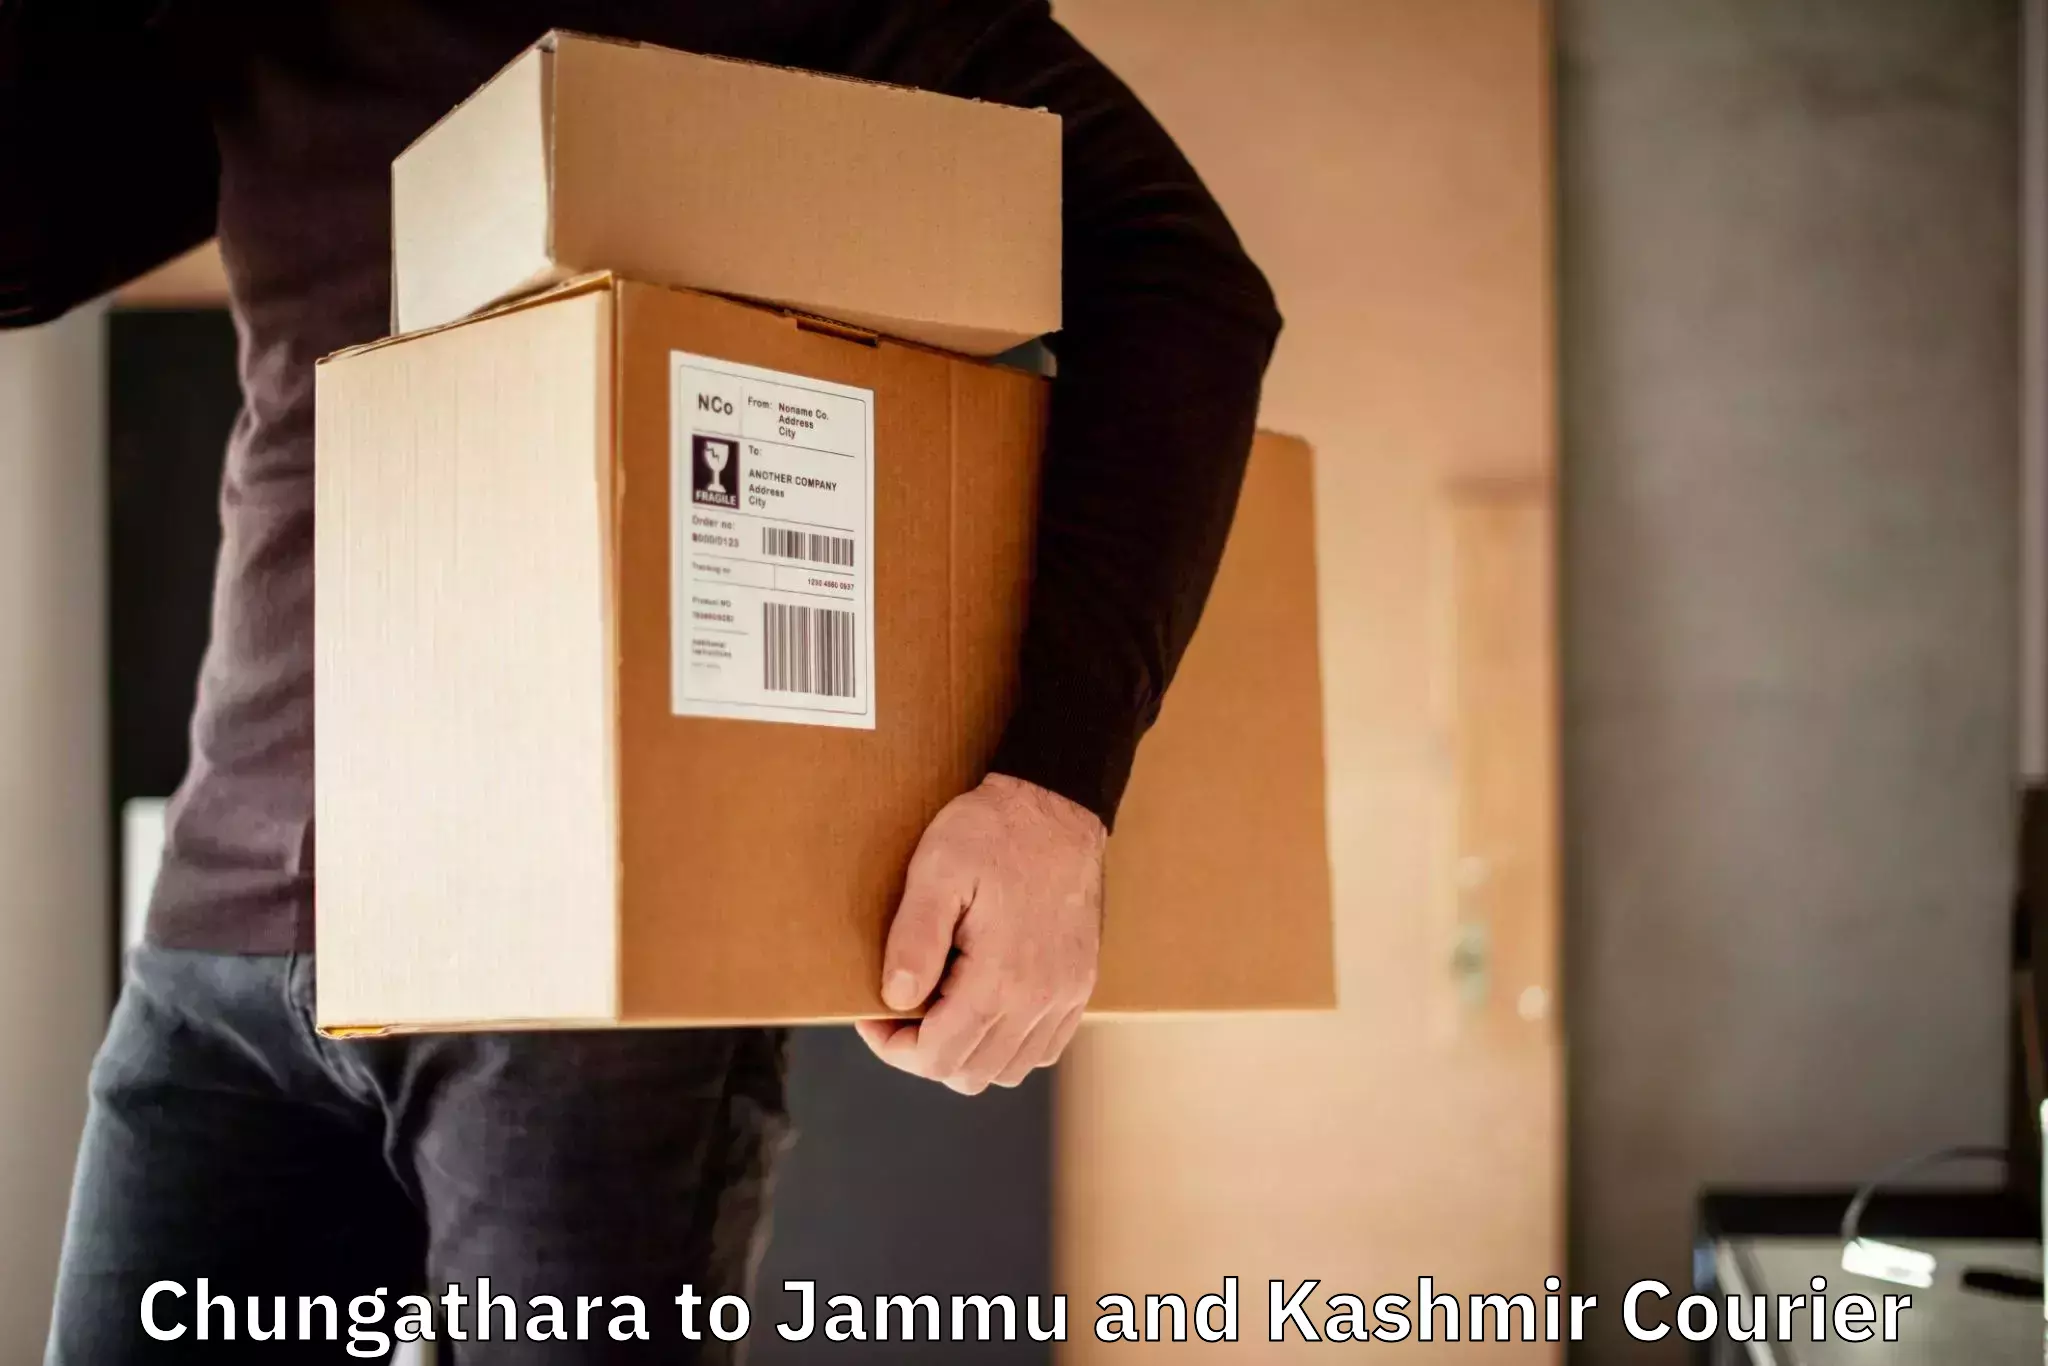 Discount courier rates Chungathara to Srinagar Kashmir